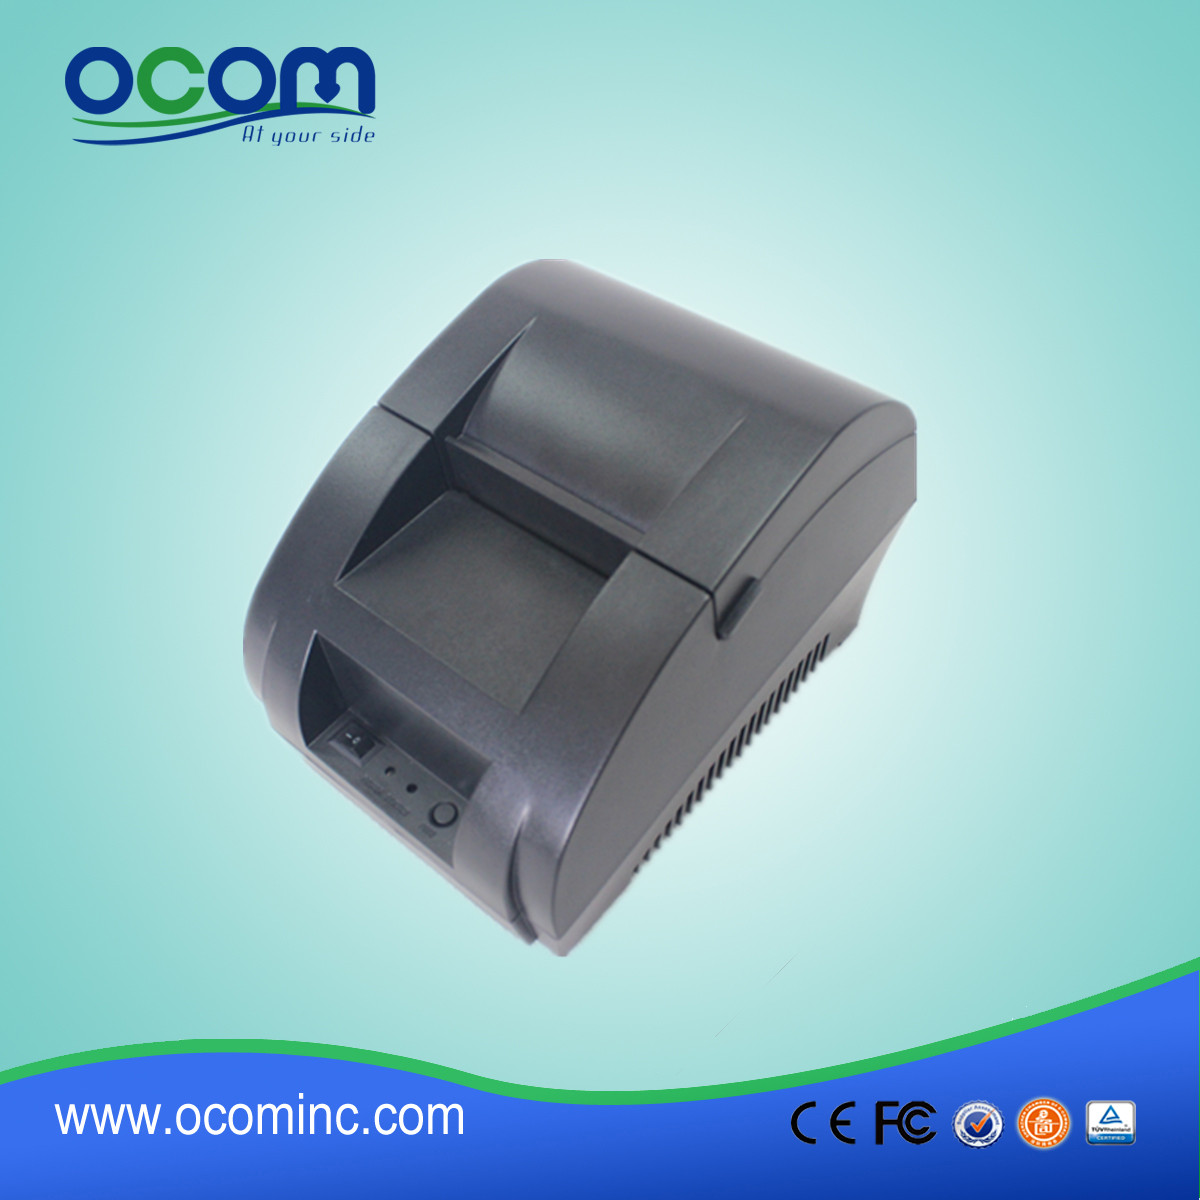 Stampante per ricevute termica 58mm OCPP-58Z con alimentatore incorporato